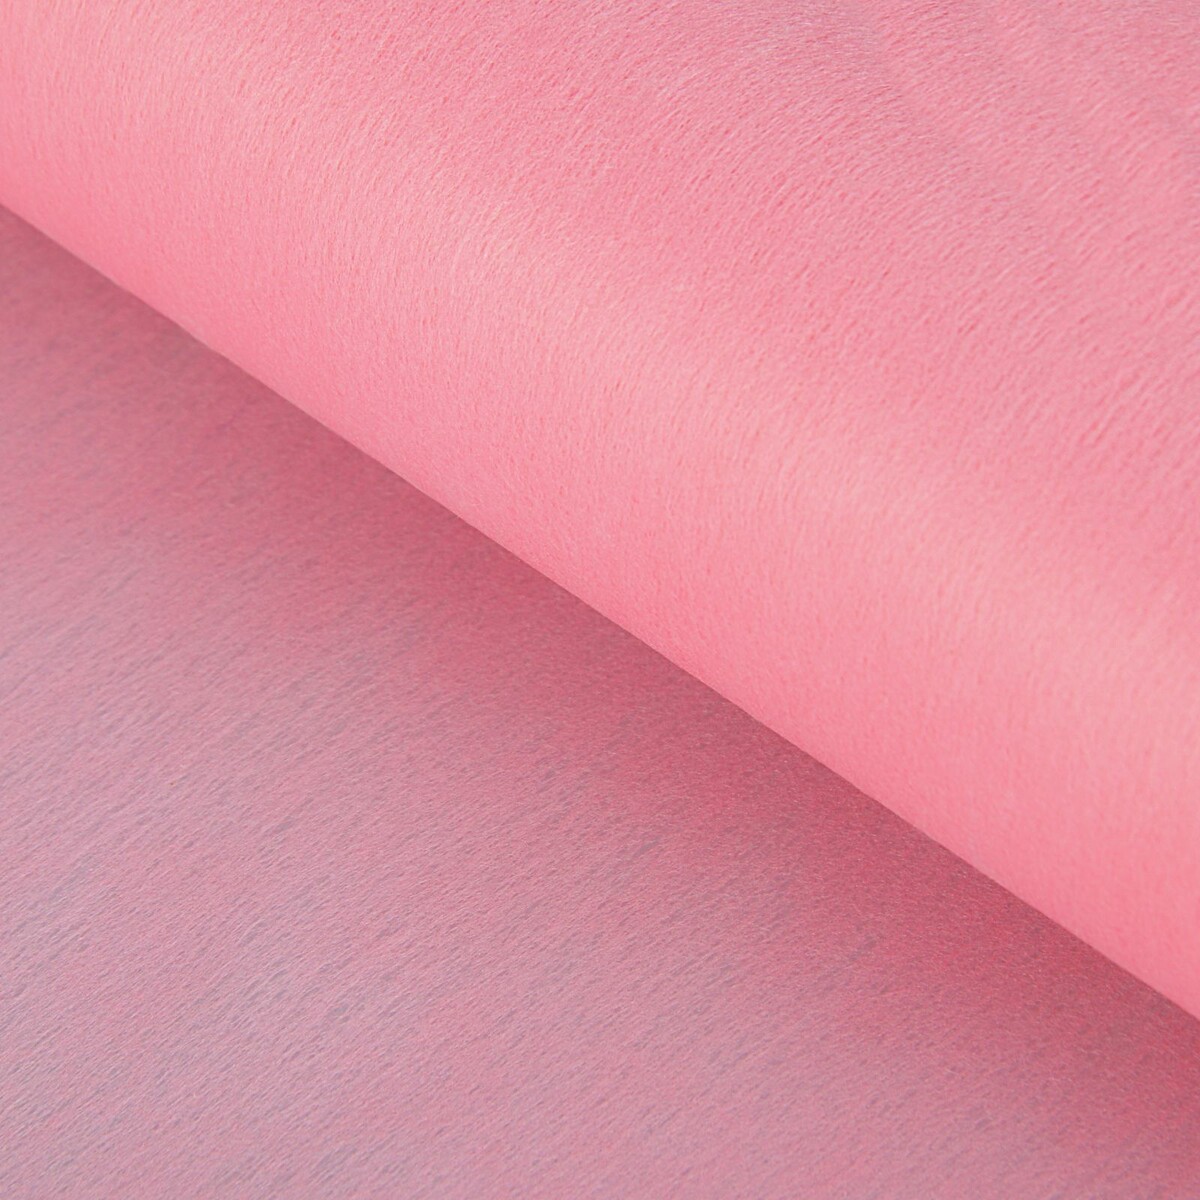 Фетр для упаковок и поделок, однотонный, розовый, двусторонний, рулон 1шт., 0,5 x 20 м фетр для упаковок и поделок однотонный ярко розовый однотонный двусторонний рулон 1шт 50 см x 15 м